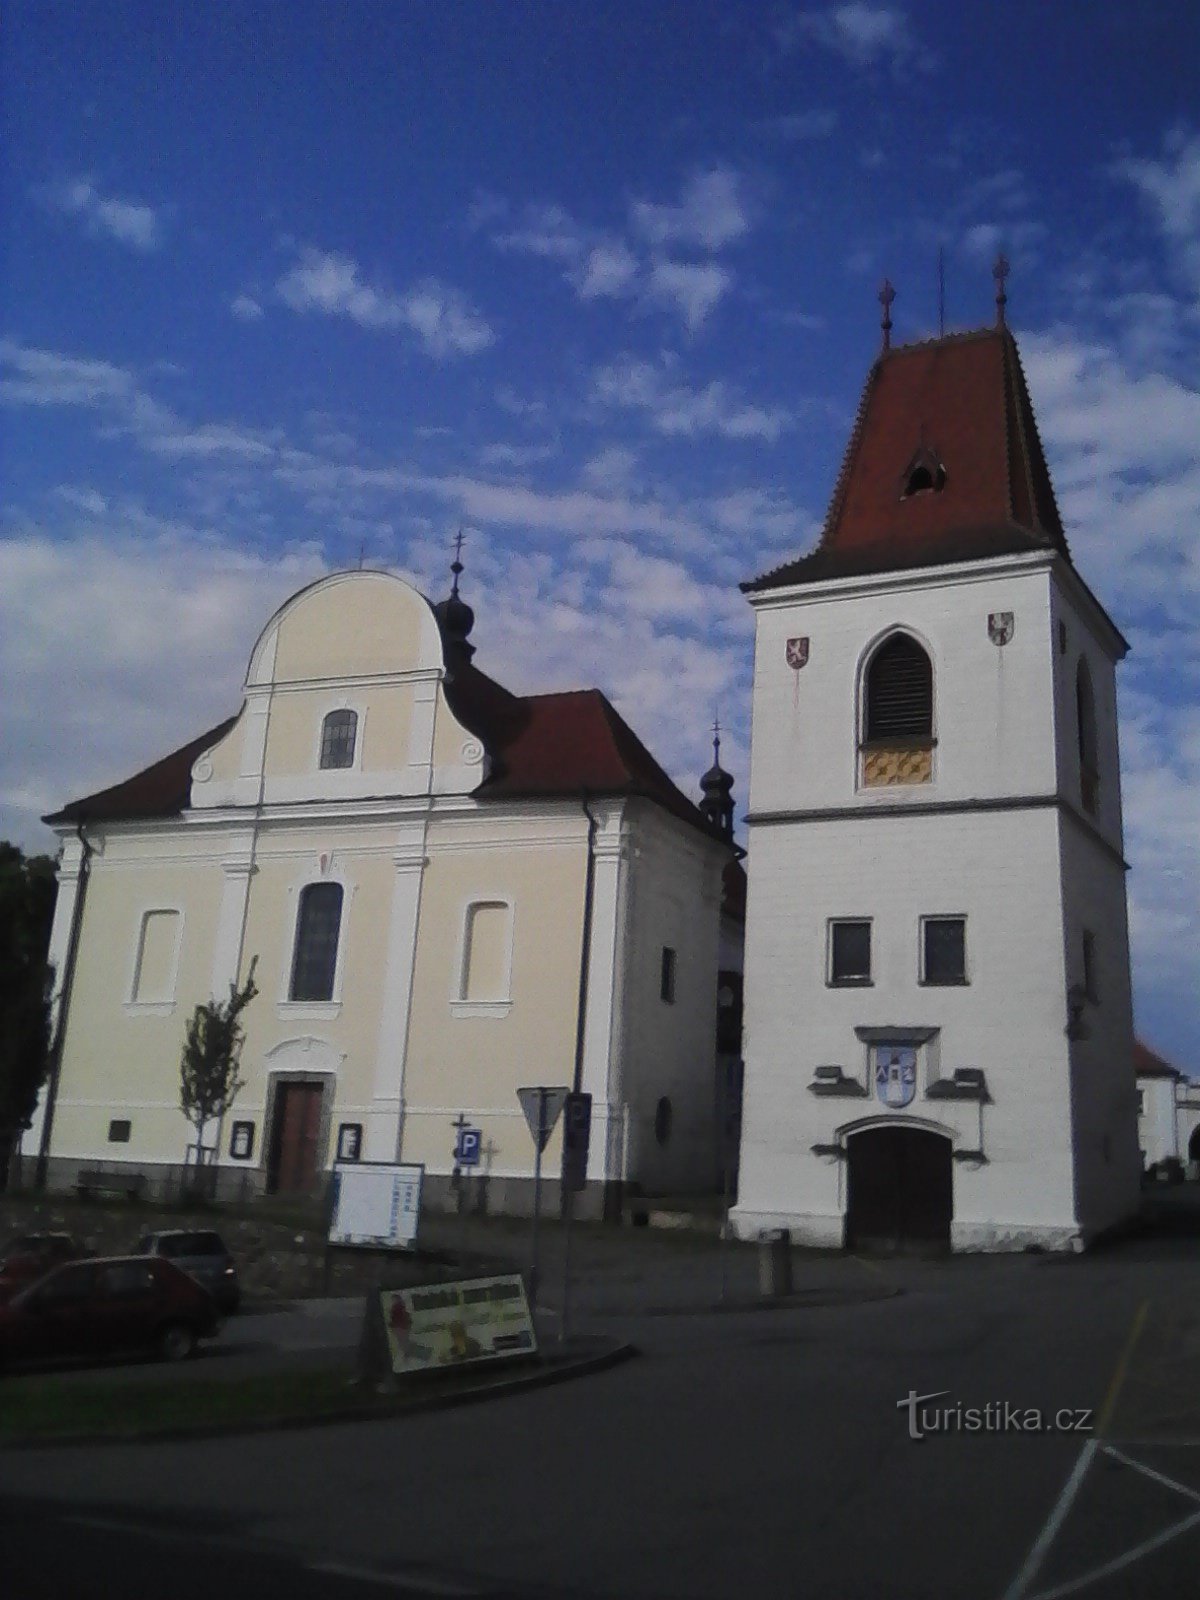 1. Tháp chuông và nhà thờ St. Martin ở Mladá Vožica